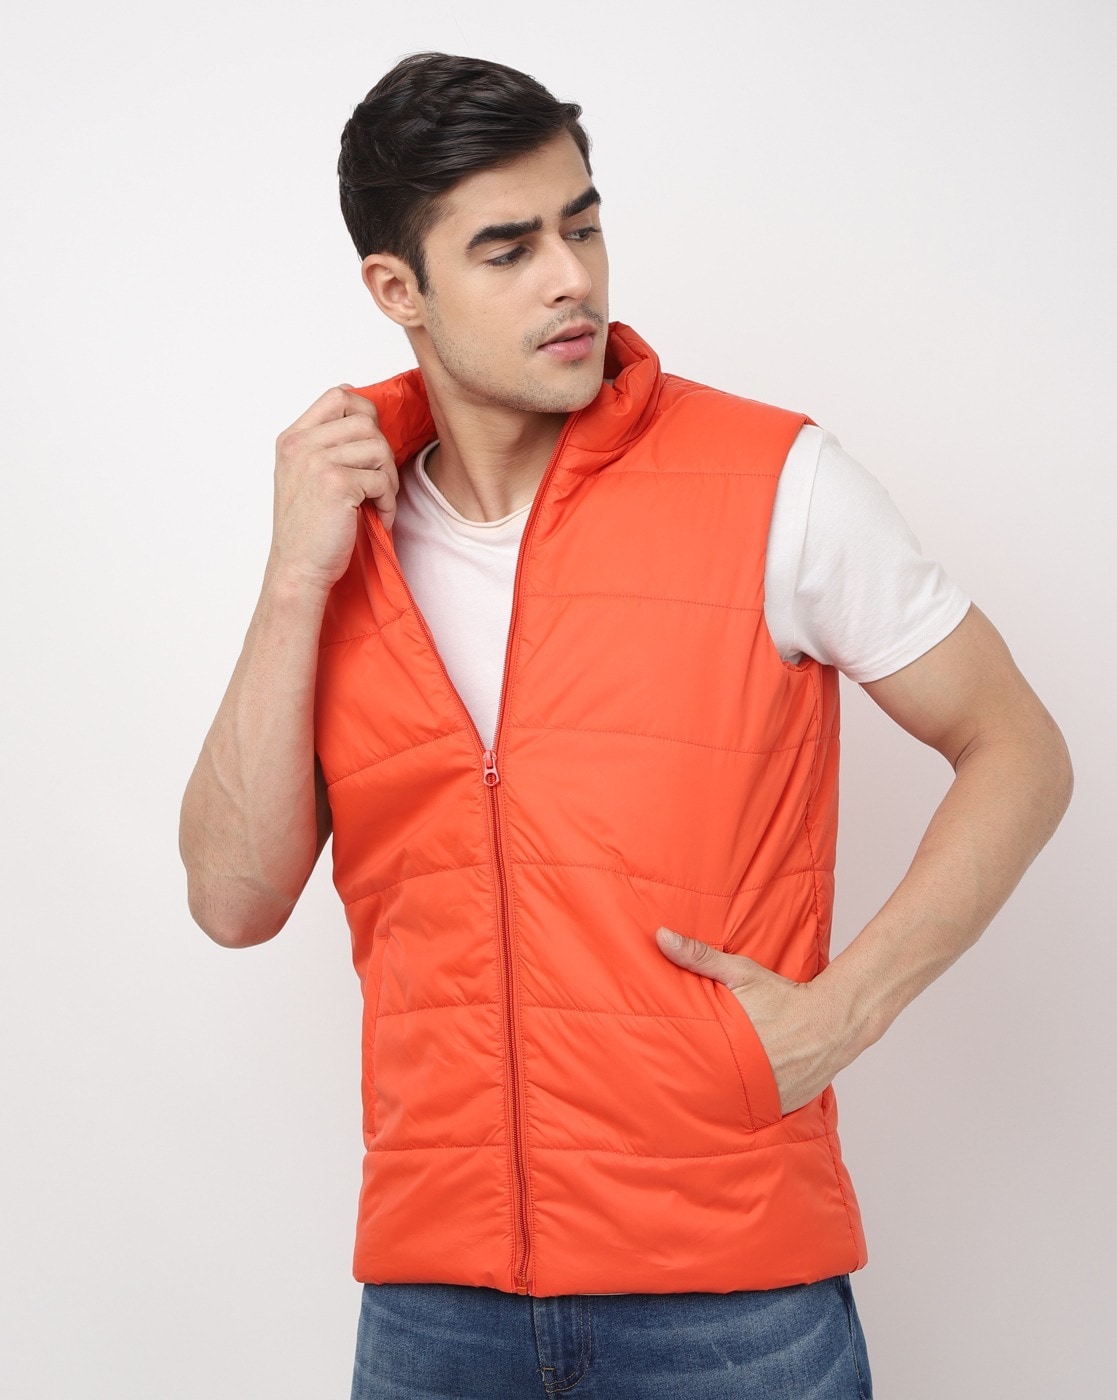 TWOCRAZIIE Half Sleeve Colorblock Men Jacket - Buy TWOCRAZIIE Half Sleeve  Colorblock Men Jacket Online at Best Prices in India | Flipkart.com